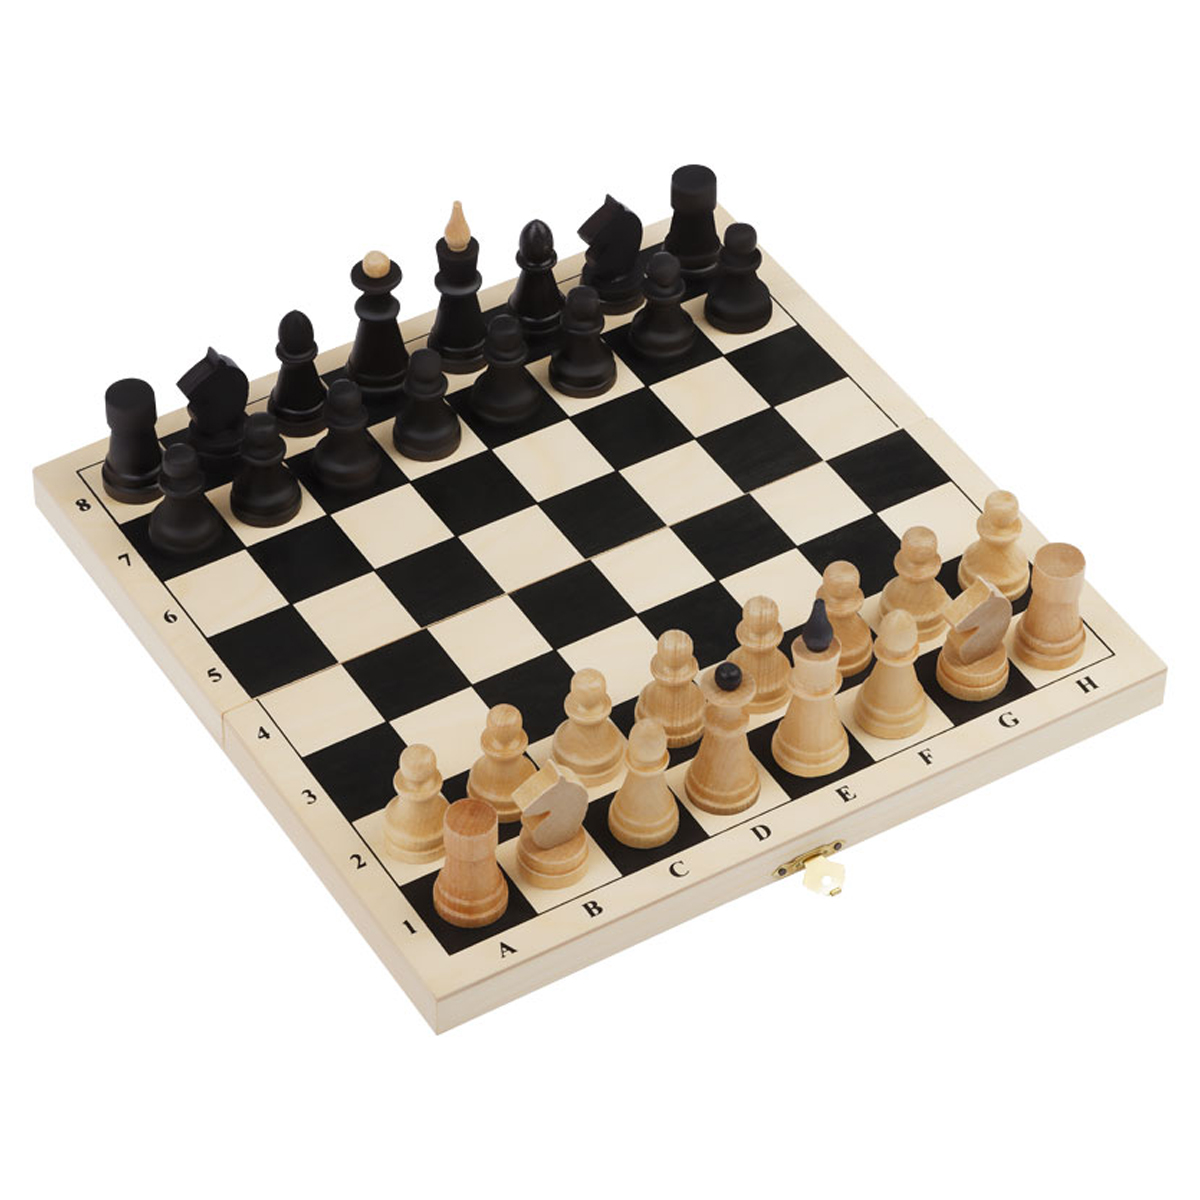 Шахматы ТРИ СОВЫ обиходные, деревянные с деревянной доской 29*29 см судоку с цифрами буквами фигурами